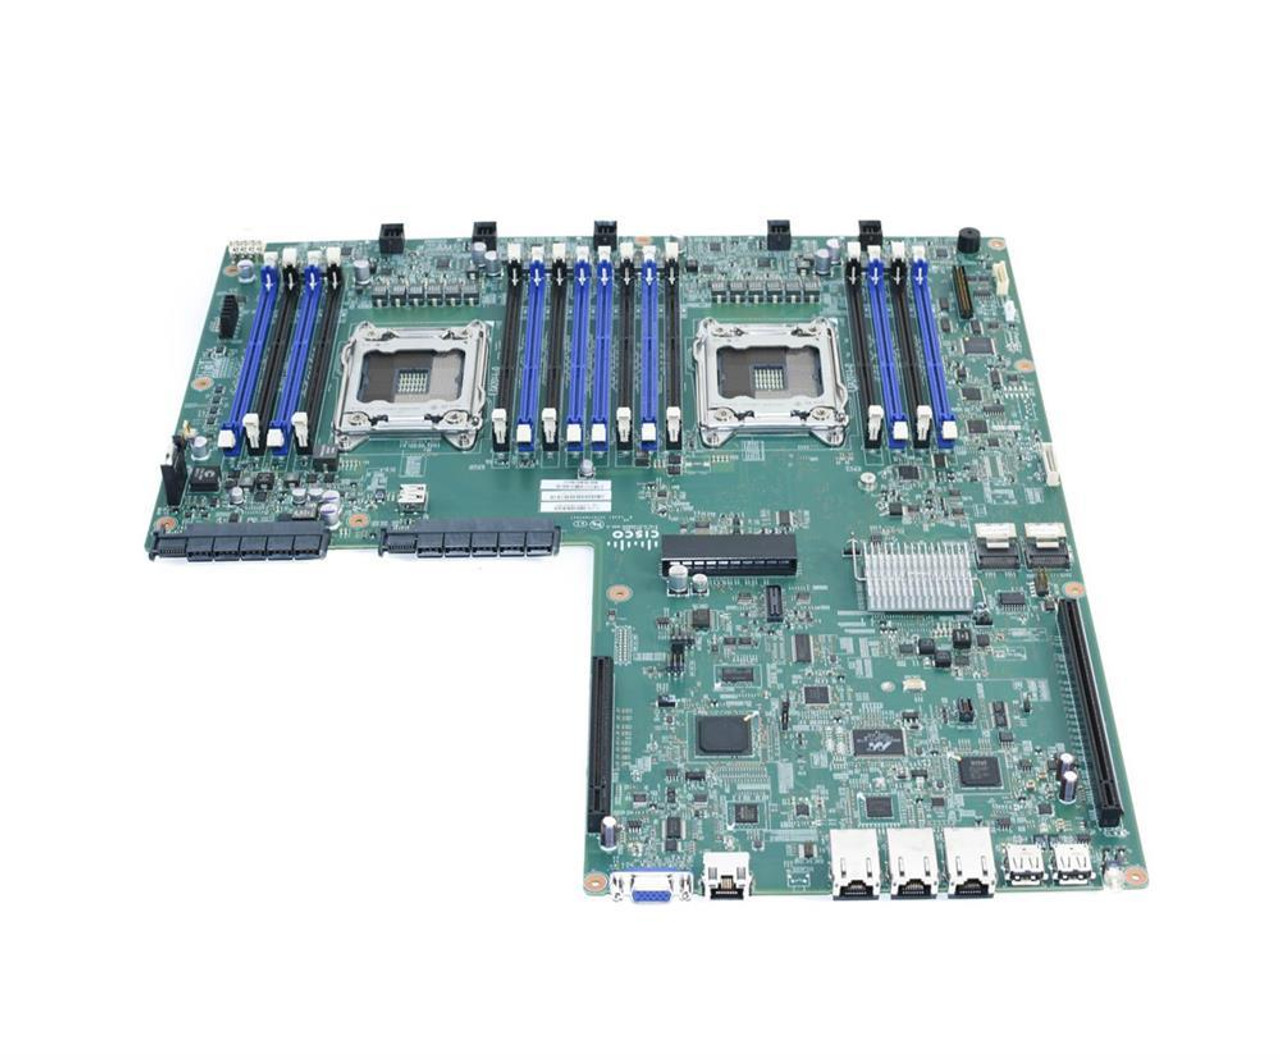 74-10442-01-V2 Cisco System Board (Motherboard) for UCS C220 M3 Server (Refurbished)